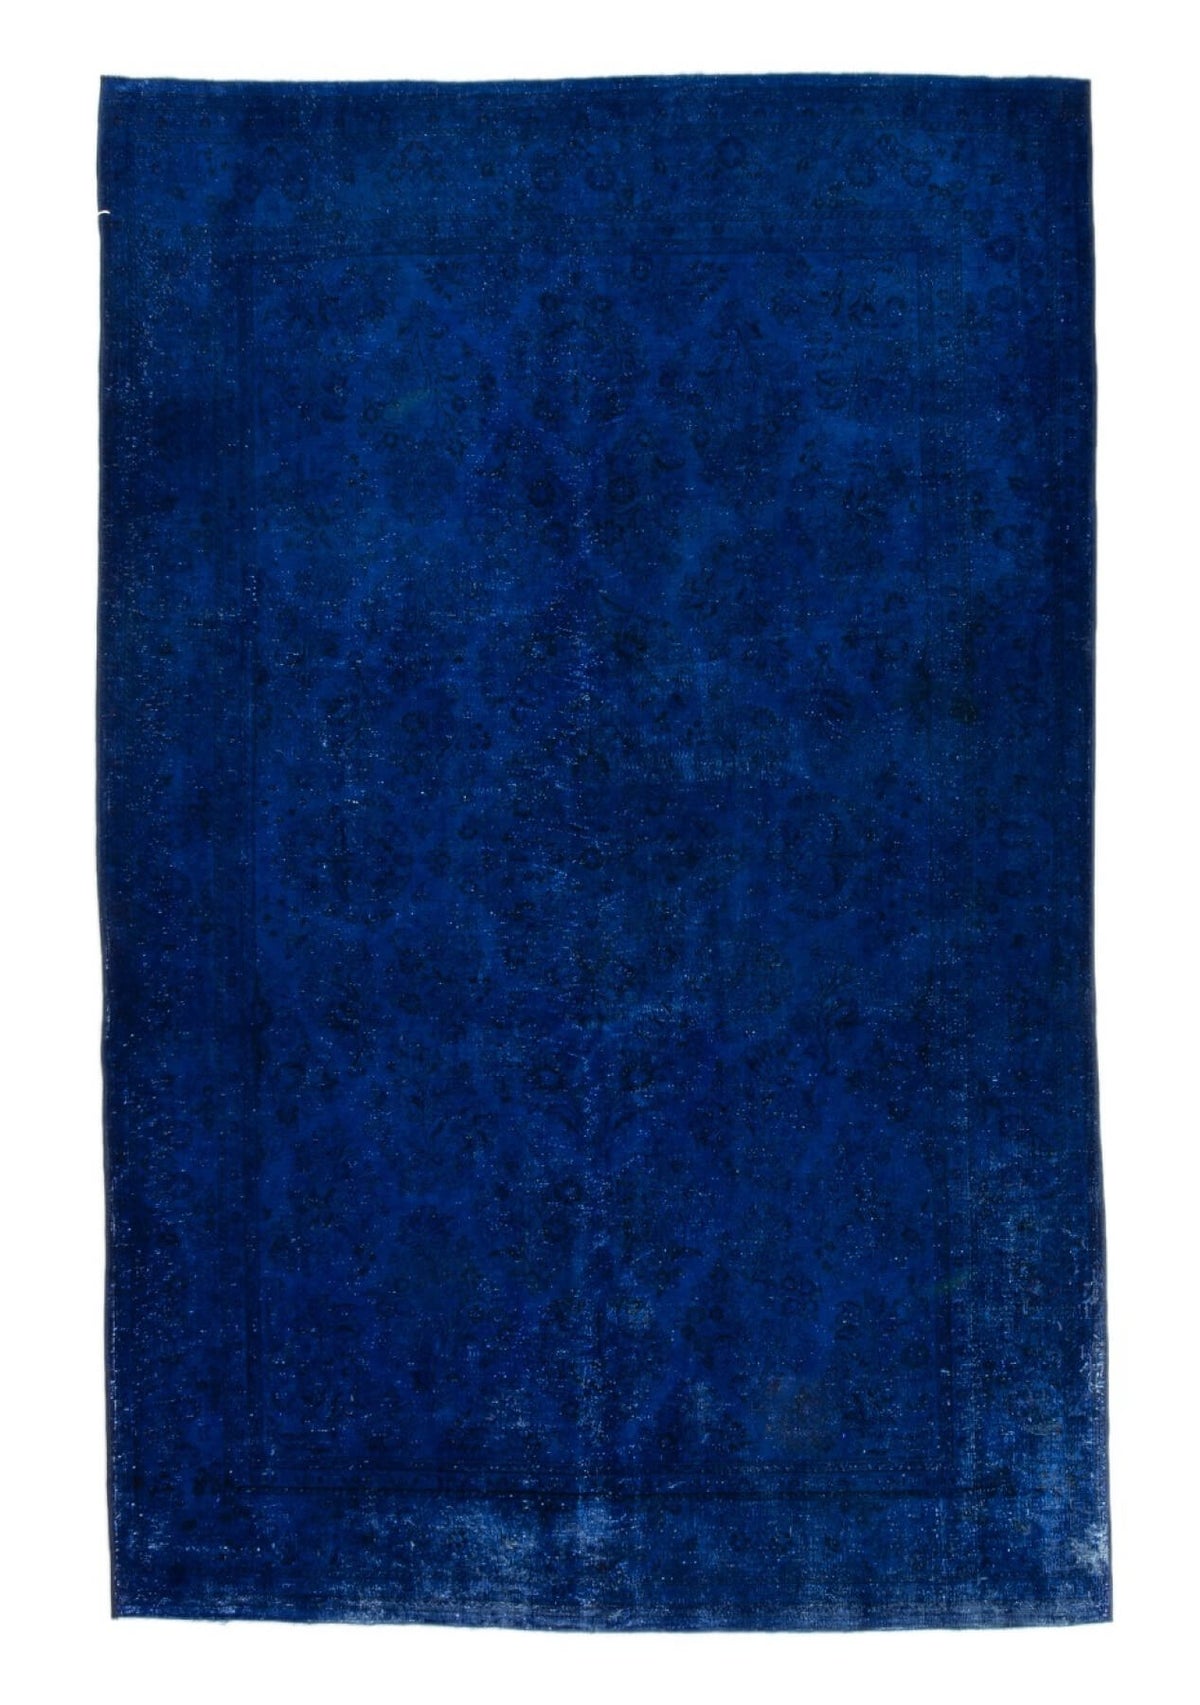 Ana - Vintage Navy Blue Overdyed Rug - kudenrugs